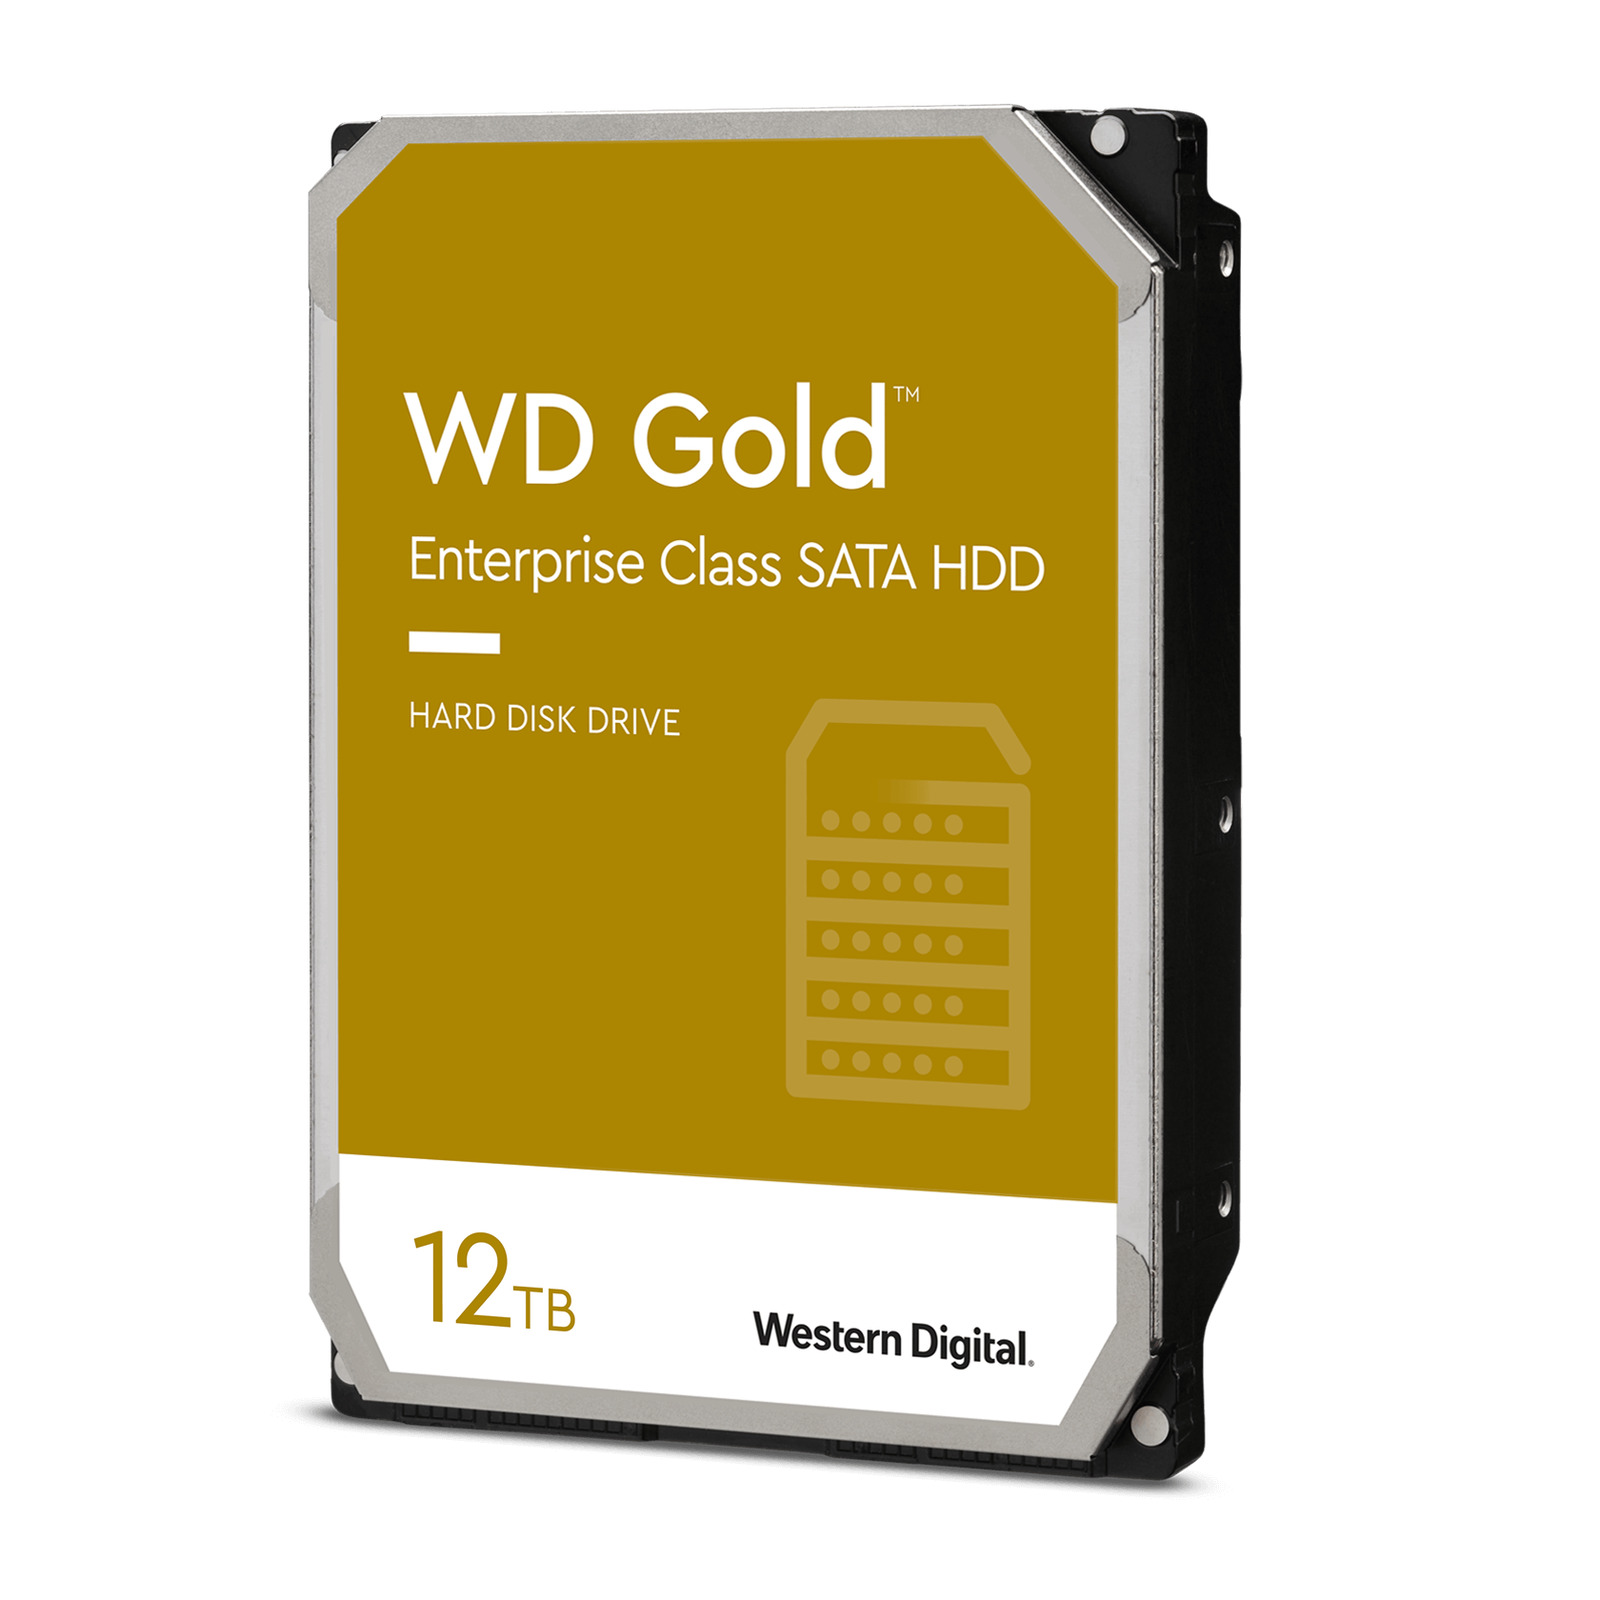 Western Digital 12TB WD Gold Enterprise Class SATA Internal HDD - WD121KRYZ